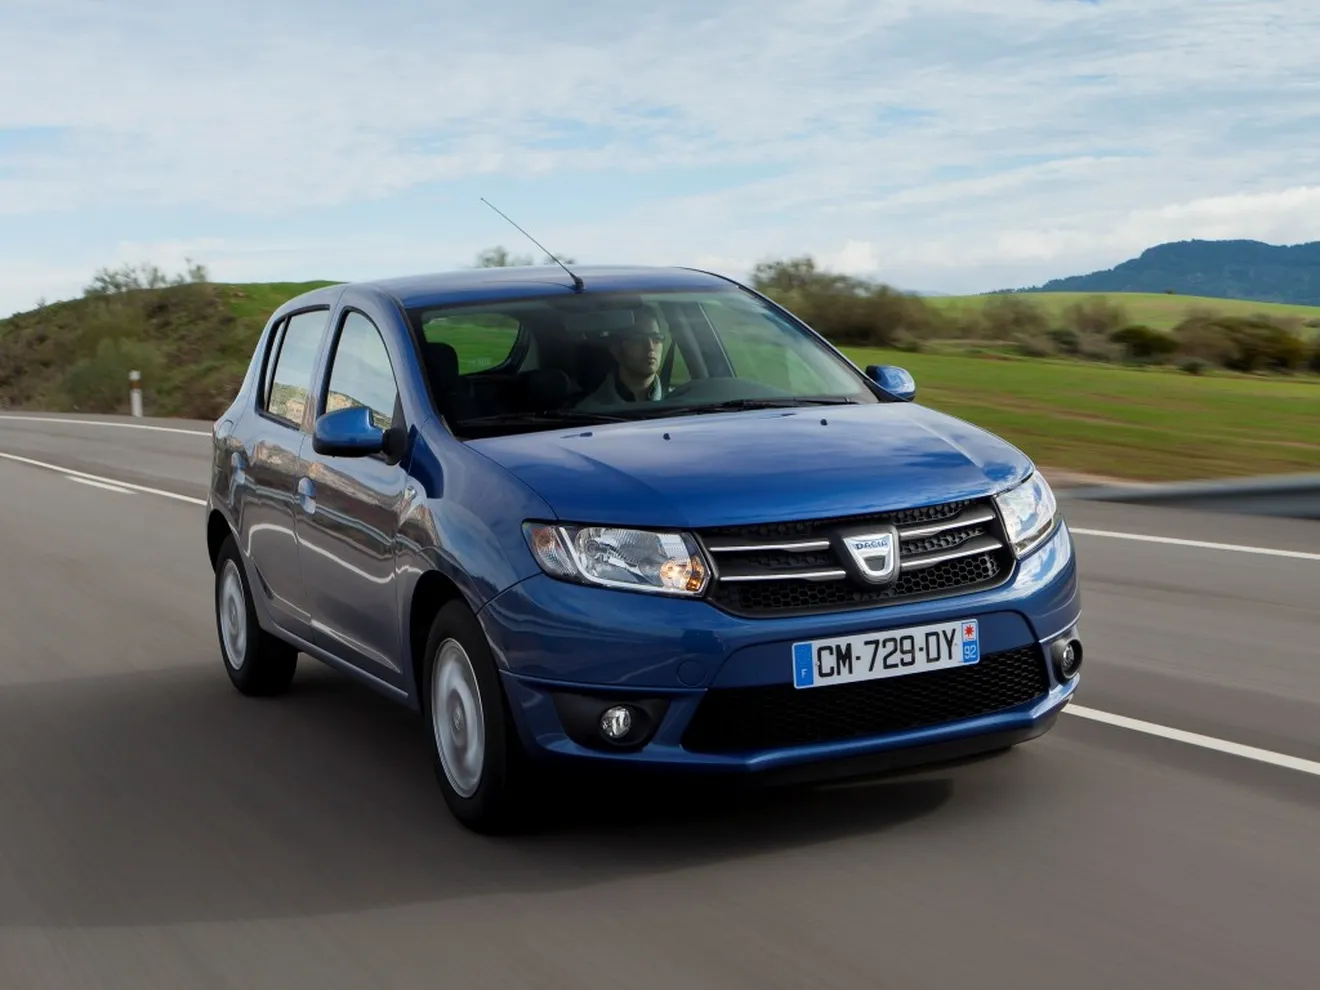 Francia - Diciembre 2015: El Dacia Sandero se mete en el Top 5